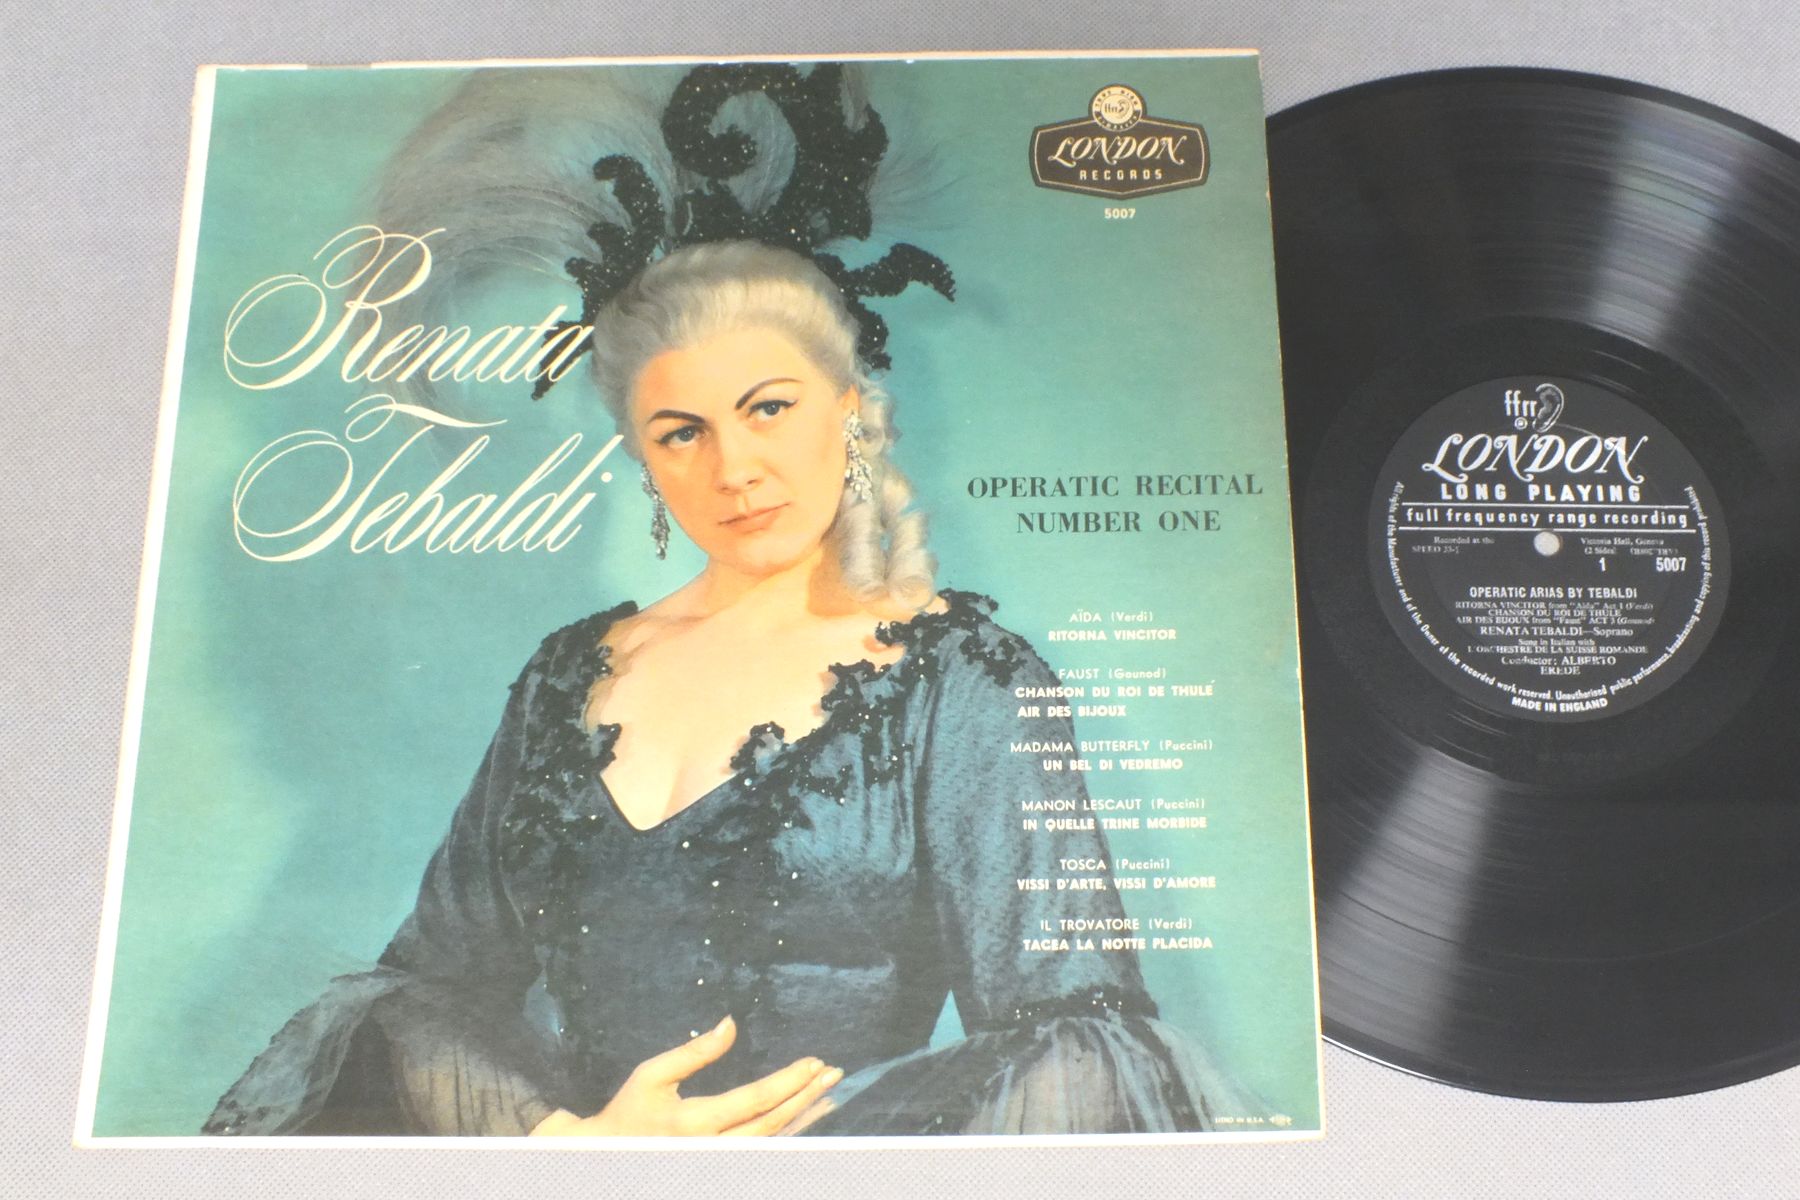 Renata Tebaldi Operatic Recital Vinyl Records Lp Cd On Cdandlp